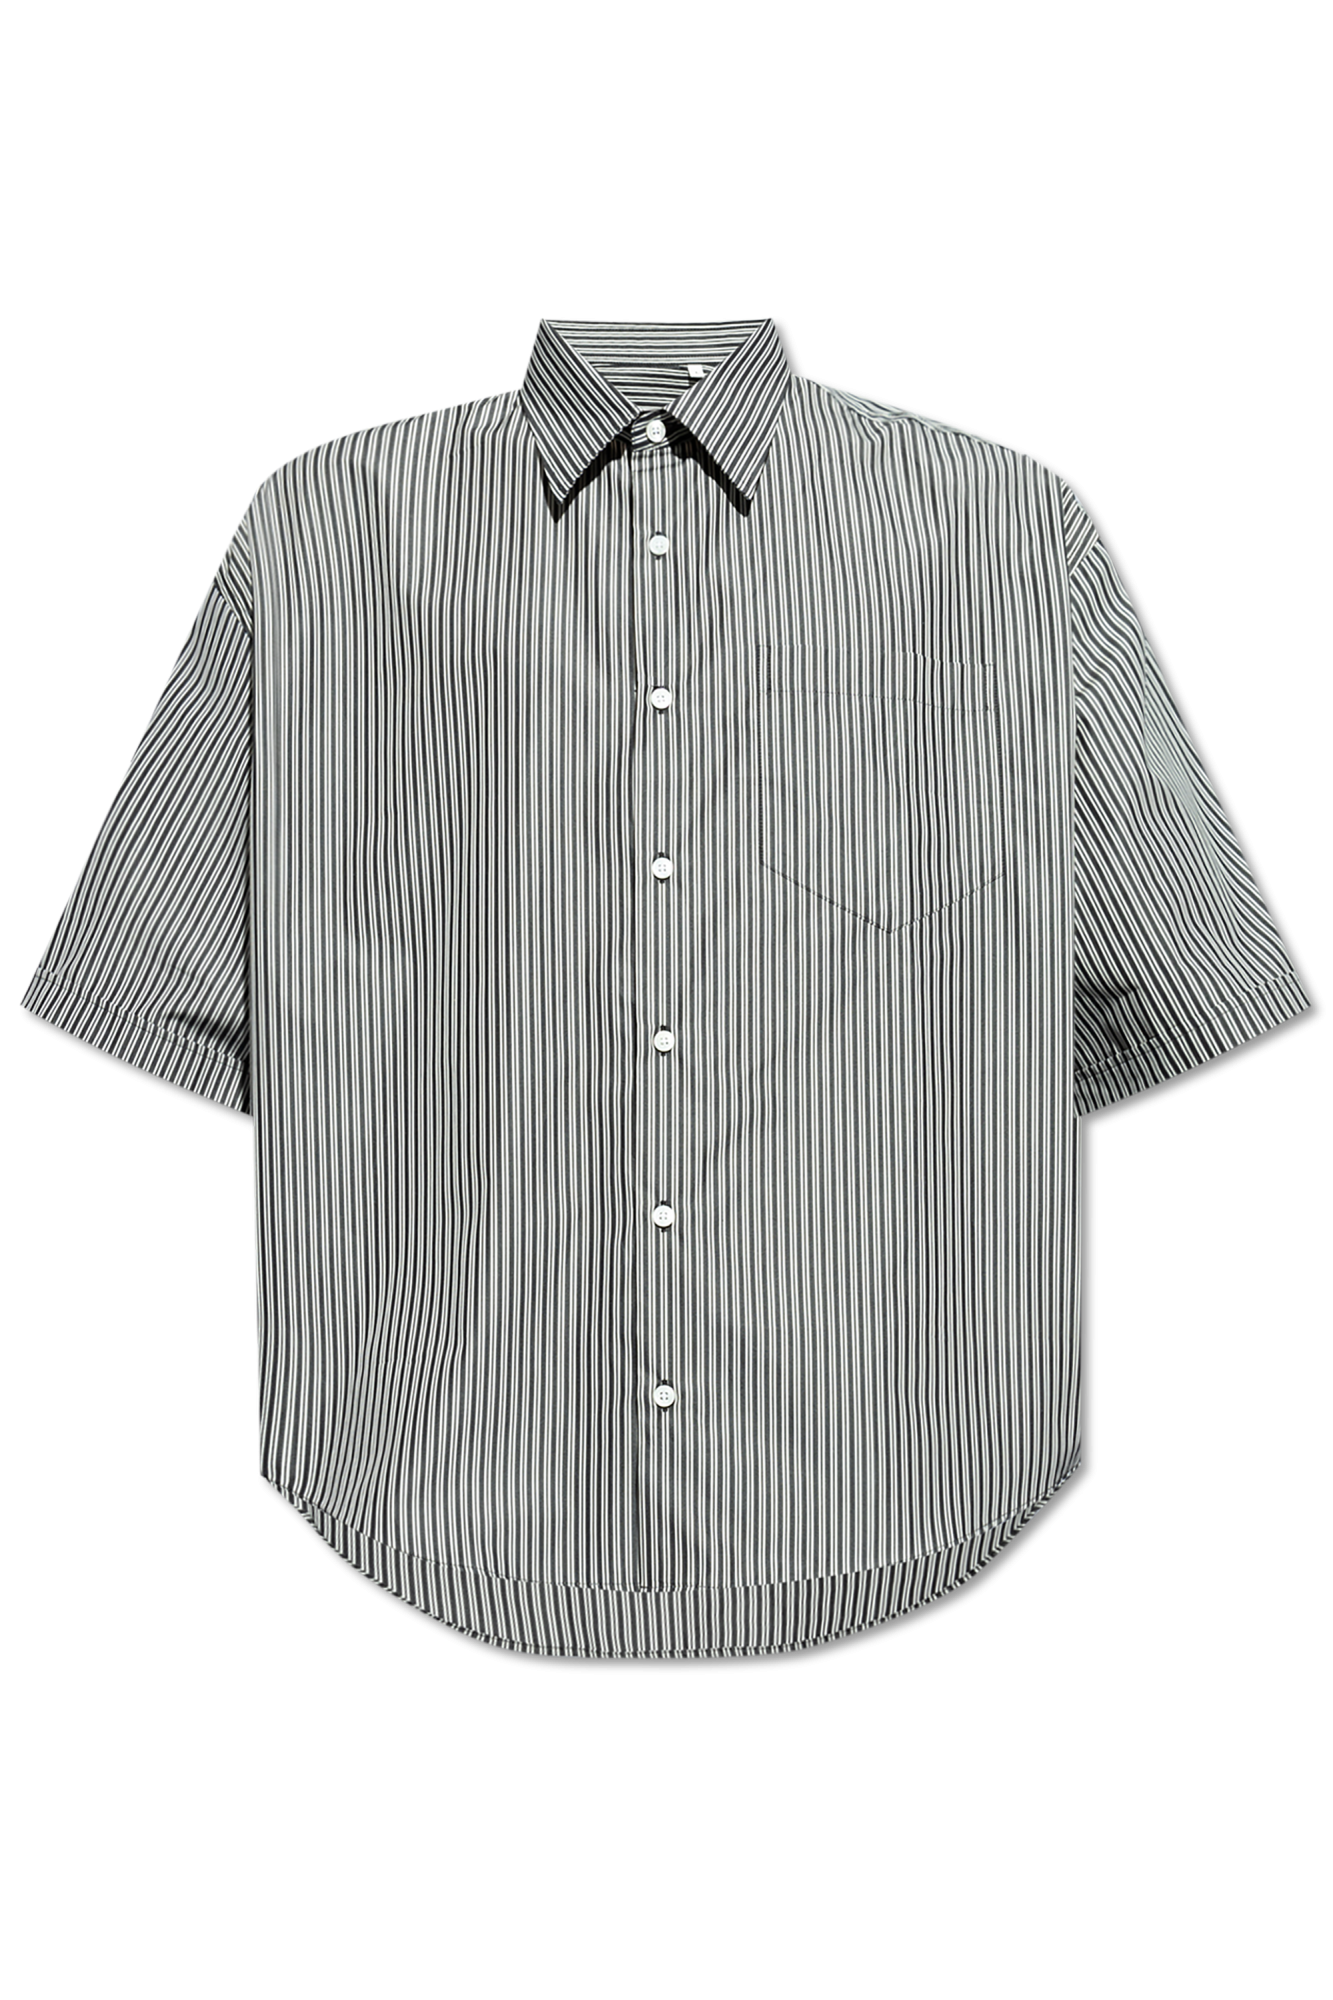 Essential monogram polo t-shirt shirt Striped pattern t-shirt shirt